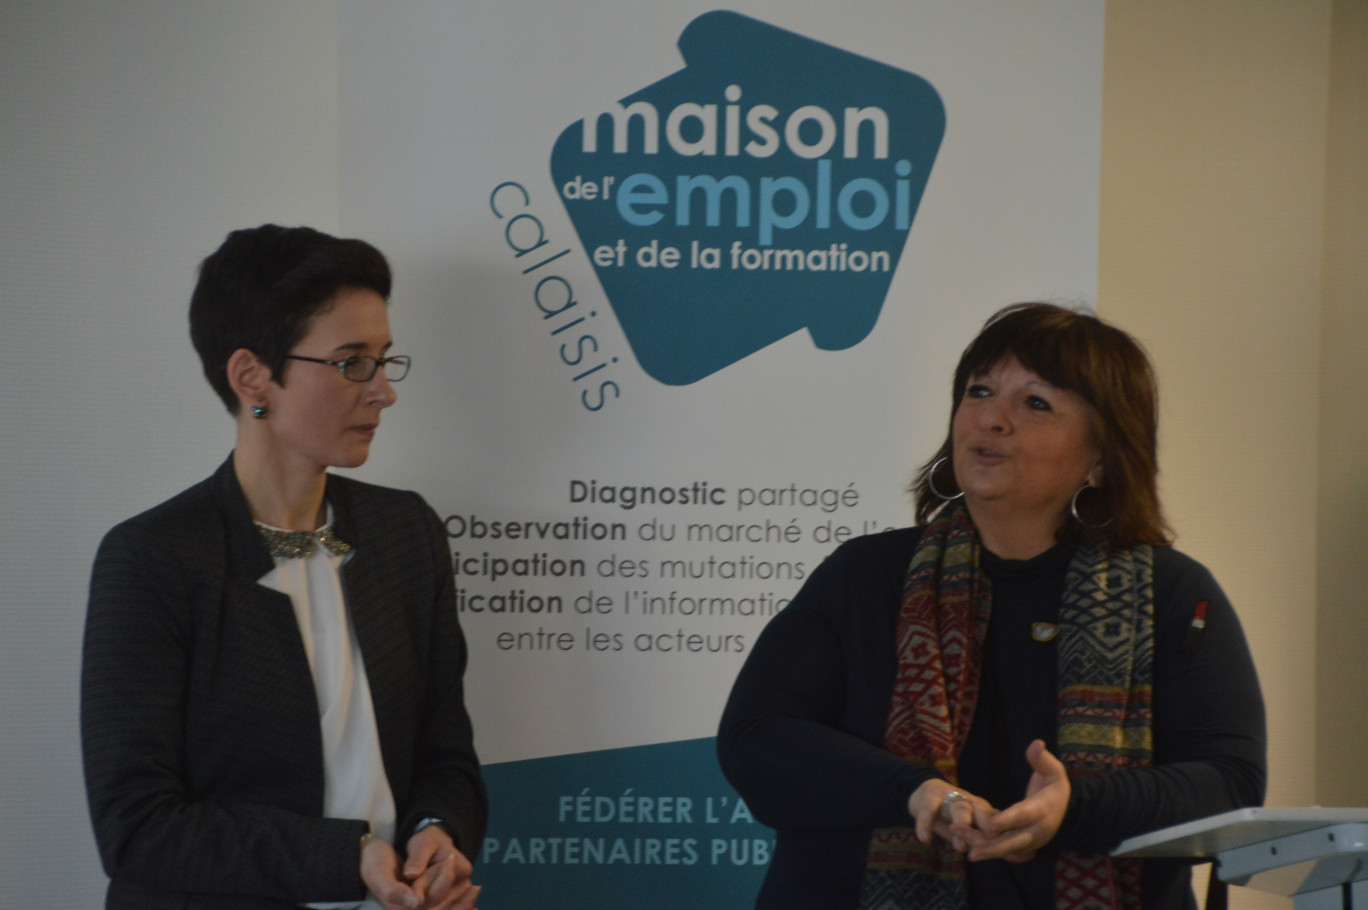 L'adjointe à l'emploi et à la formation Michèle Ducloy, des plus enthousiastes, était à la MEF lors de la présentation.